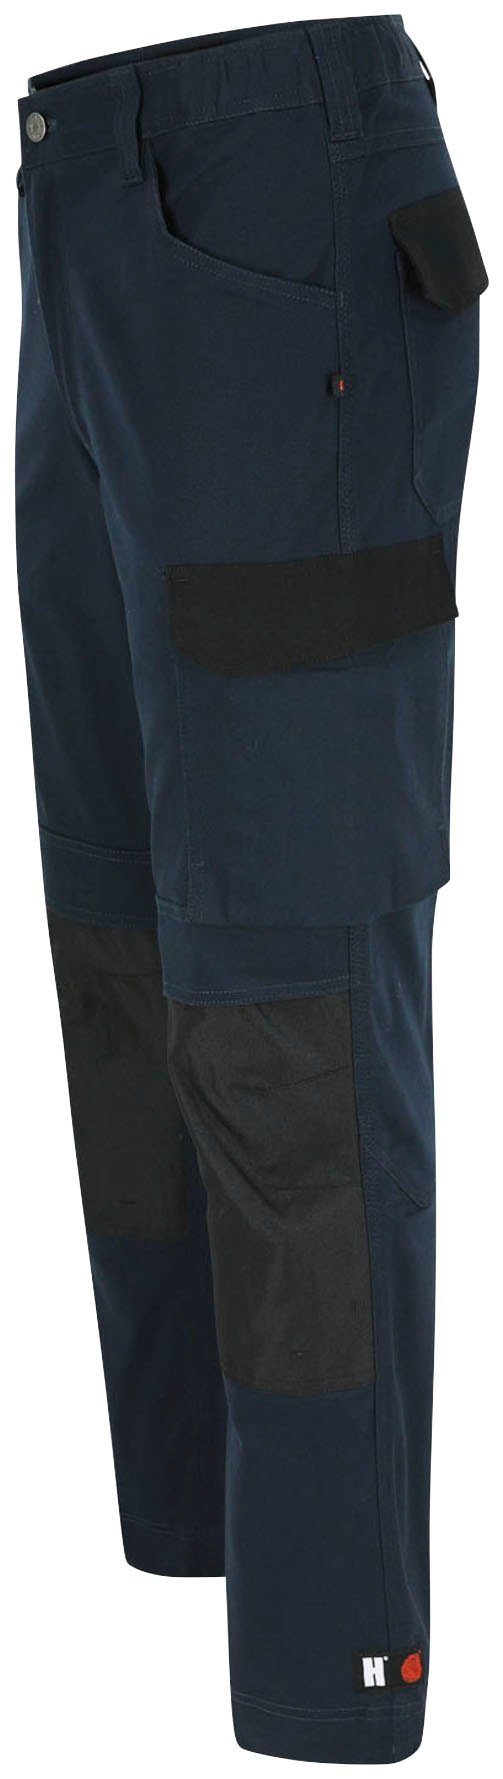 Herock Arbeitshose DERO wasserabweisend marine Slim Passform, Fit Multi-Pocket, 2-Wege-Stretch